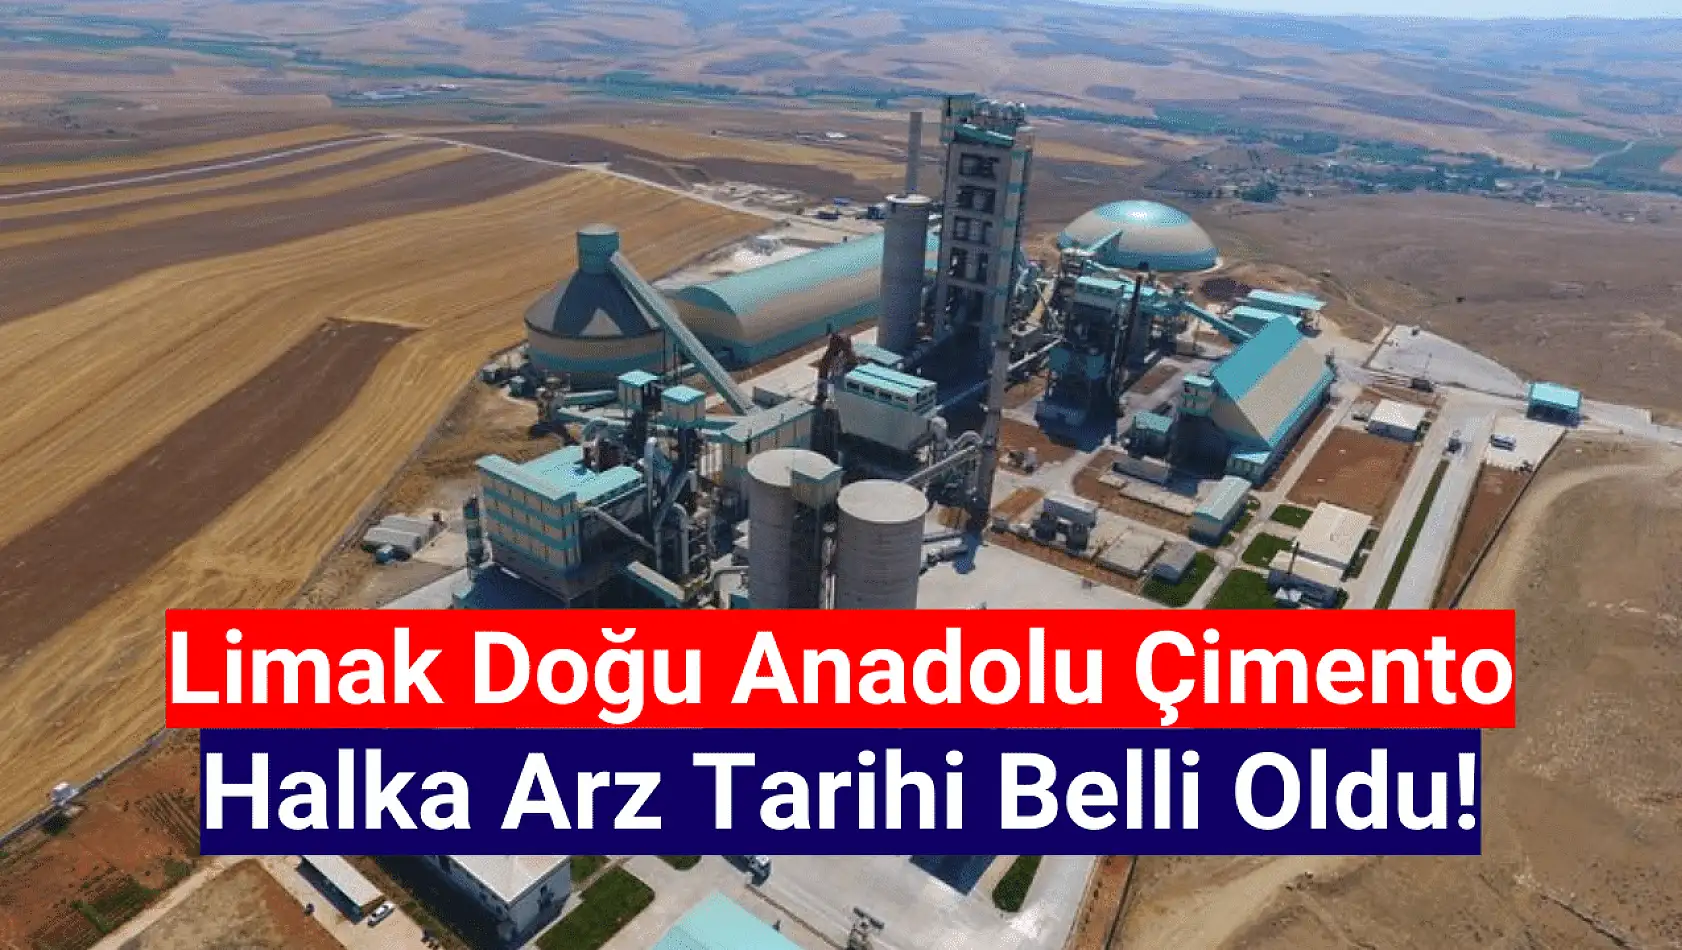 Limak Doğu Anadolu Çimento (LMKDC) halka arz tarihi belli oldu!